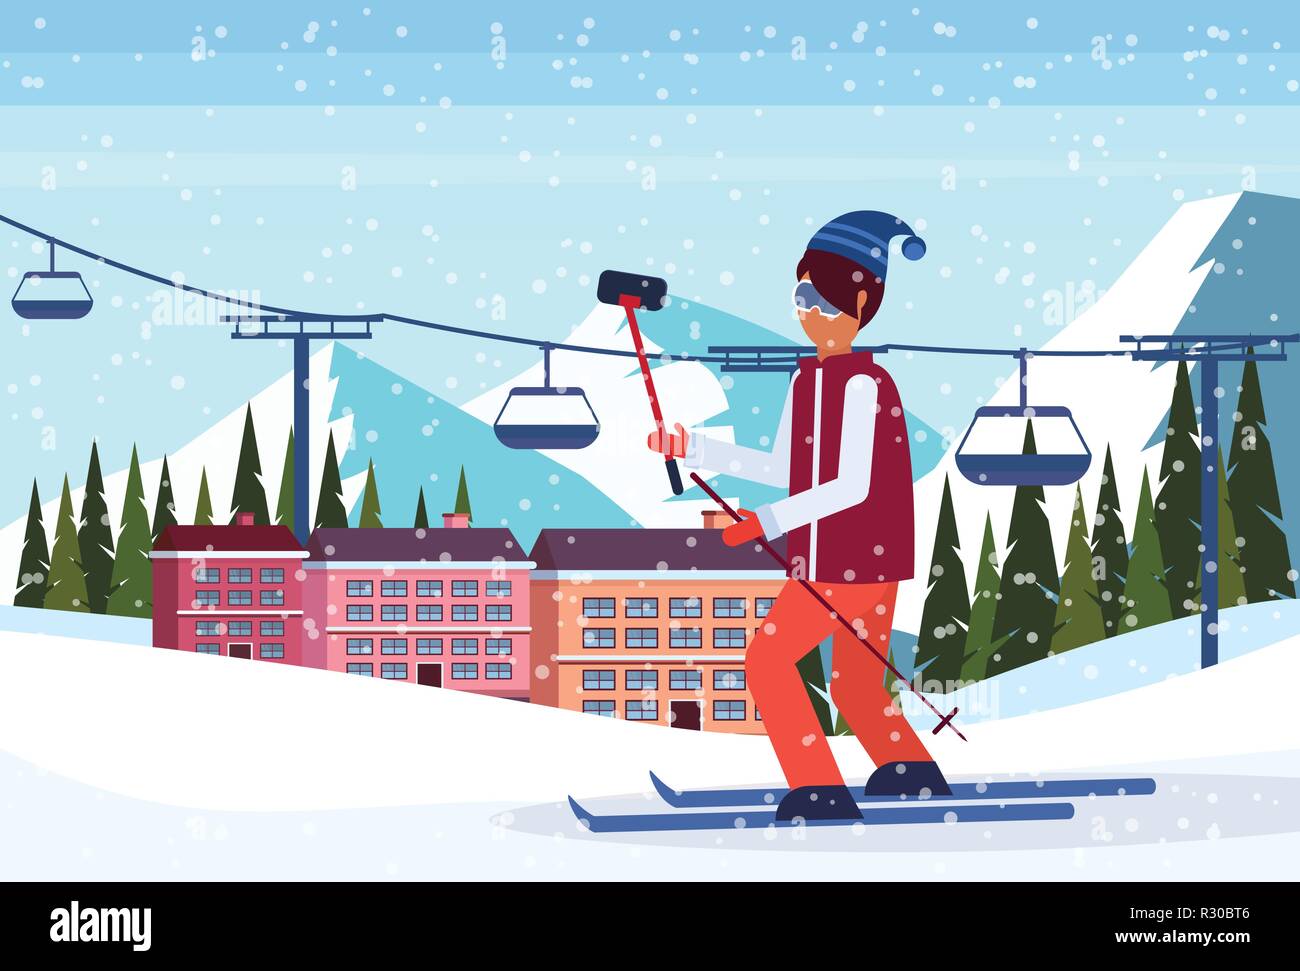 Hombre teniendo selfie ski resort hotel alberga edificios teleférico nevados abeto fondo paisajístico vacaciones de invierno concepto horizontal plana Ilustración del Vector